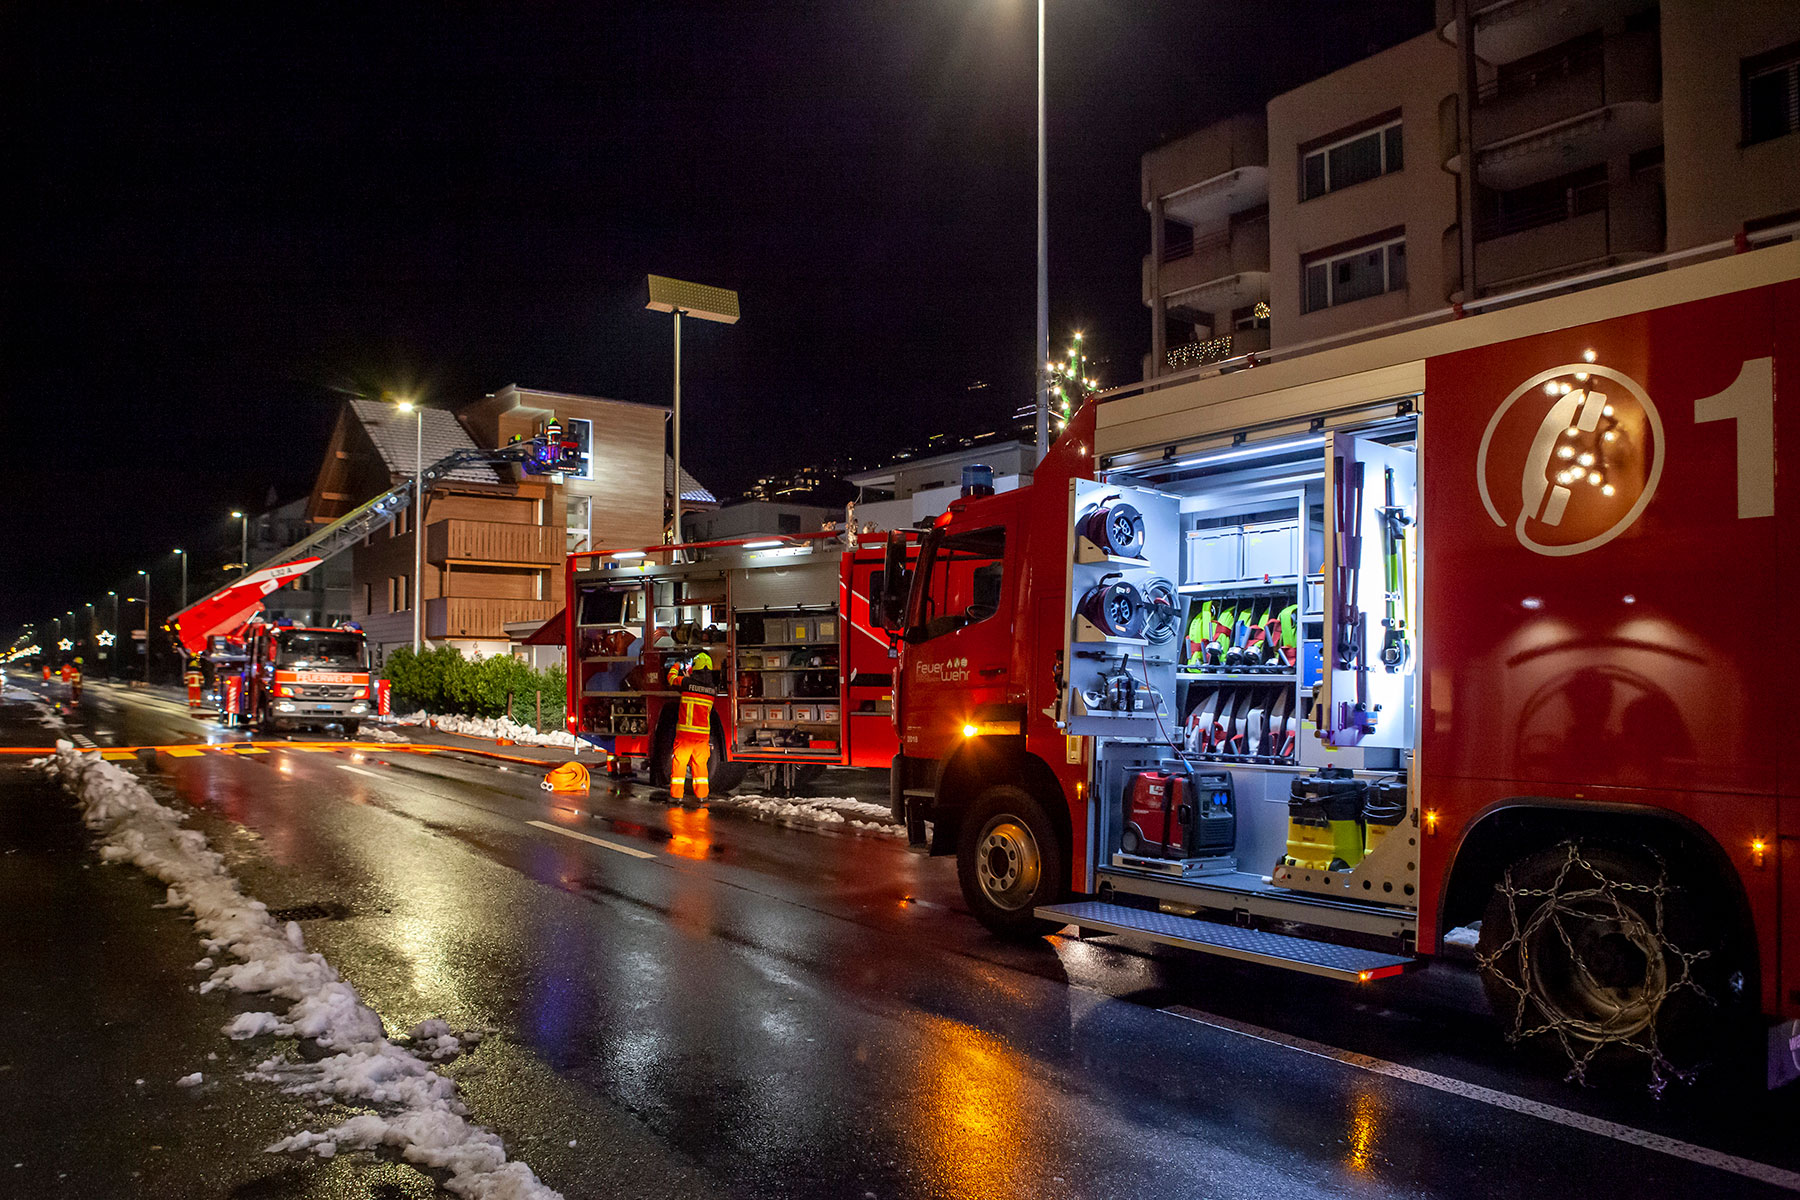 In Ennetbürgen brennt es in einem Alters- und Pflegeheim. Sieben Personen werden evakuiert, eine Person stirbt später im Spital an ihren Verletzungen.